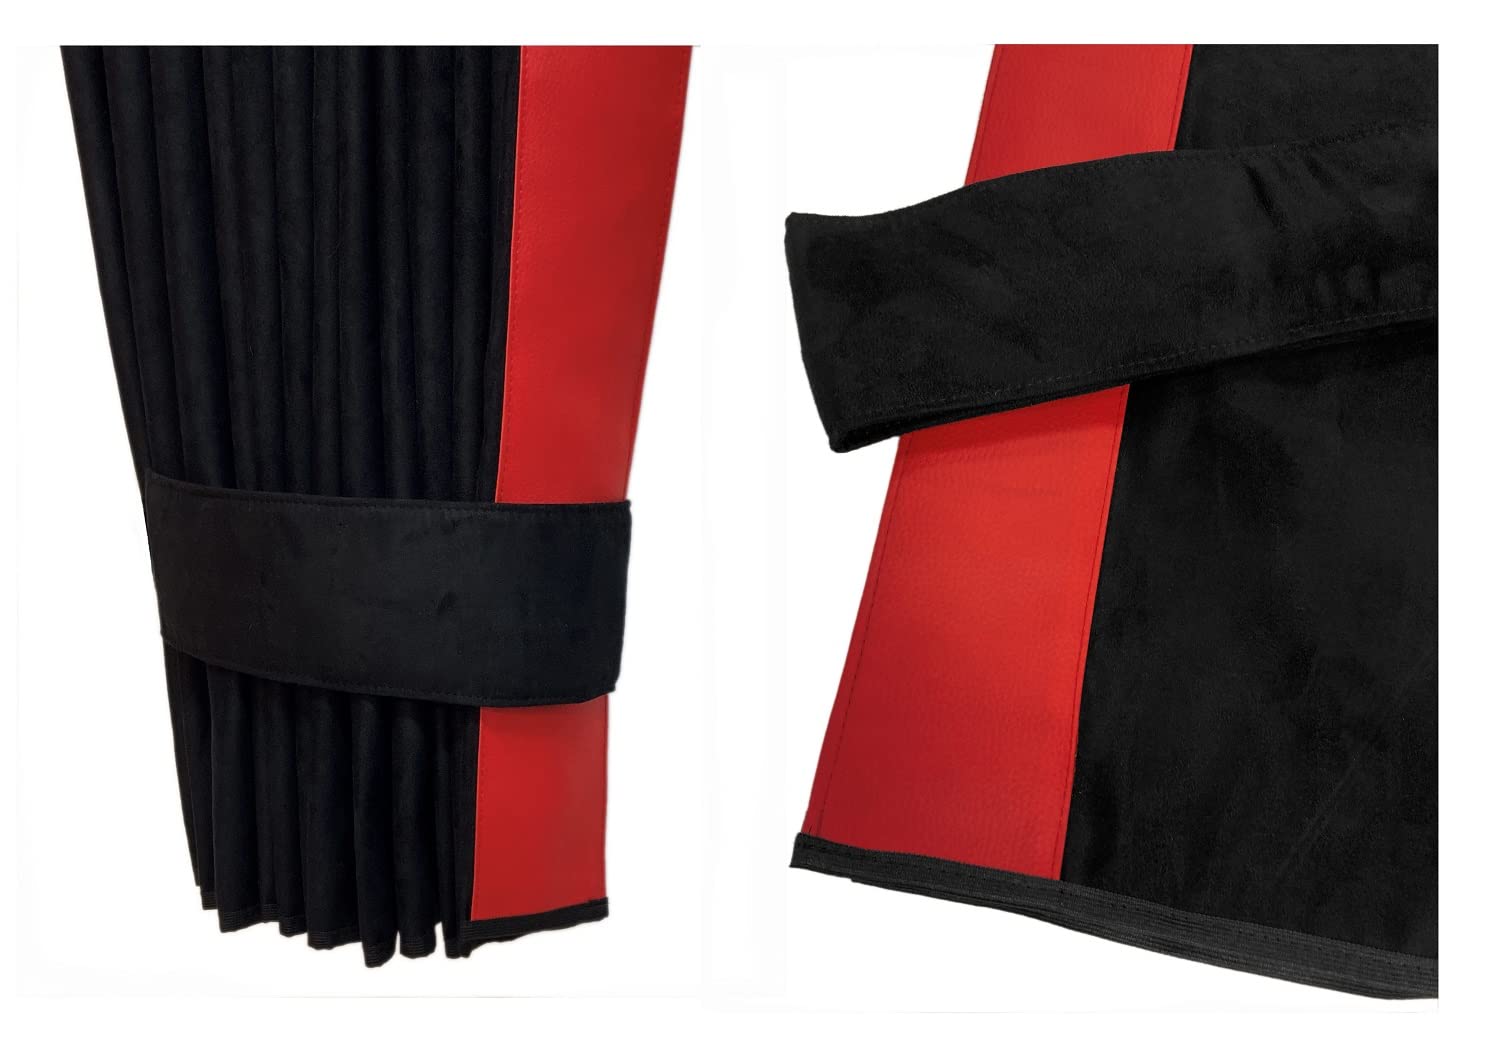 LKW 2 Seitengardinen passend für DAF ab 2021 XF XG XG+, schwarz mit roten Kante aus Kunstleder von Adomo